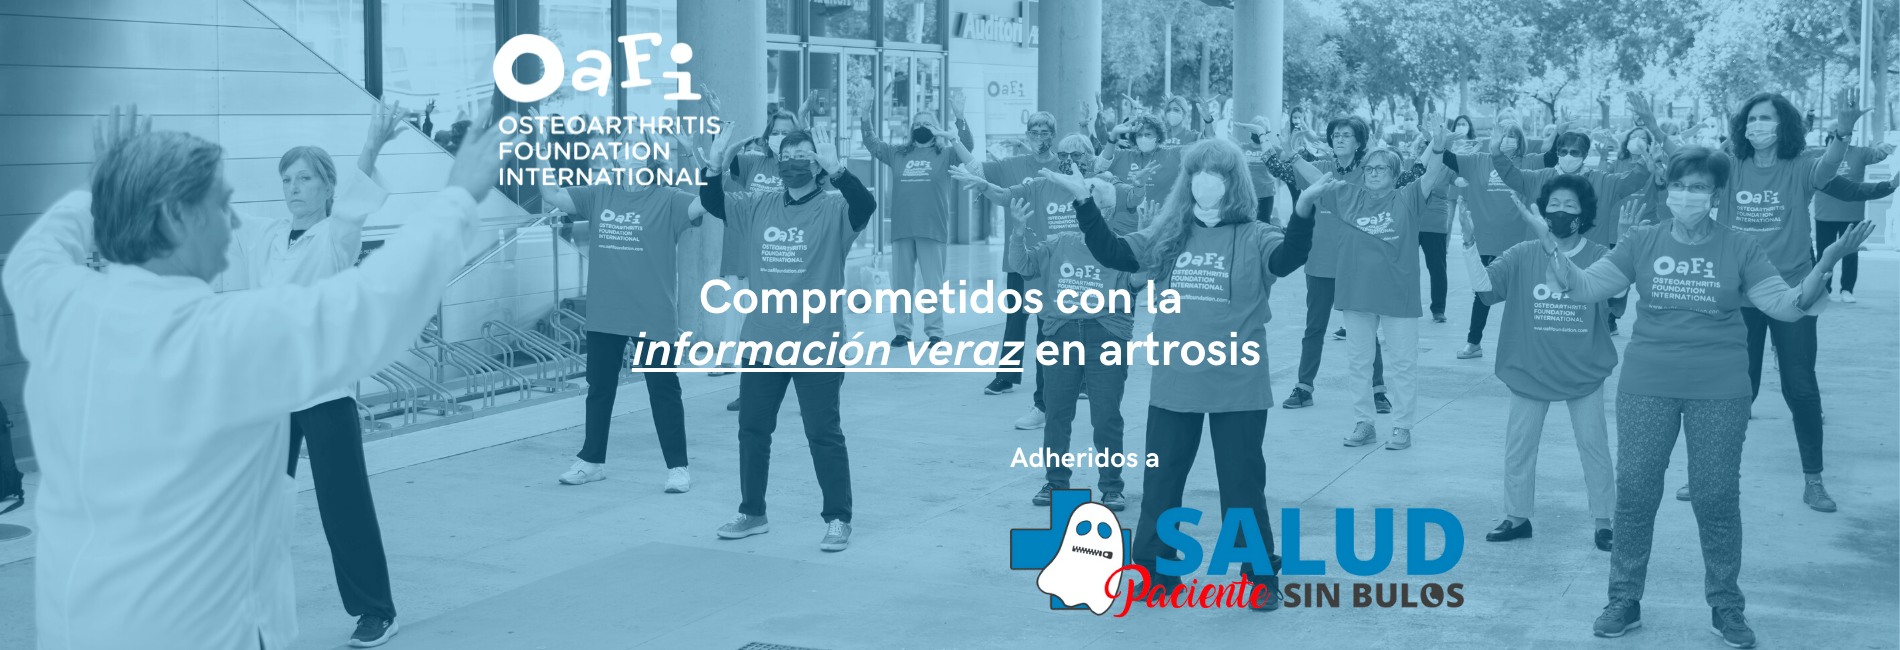 OAFI se une a #SaludSinBulos para frenar la desinformación en osteoporosis y artrosis junto a AECOSAR